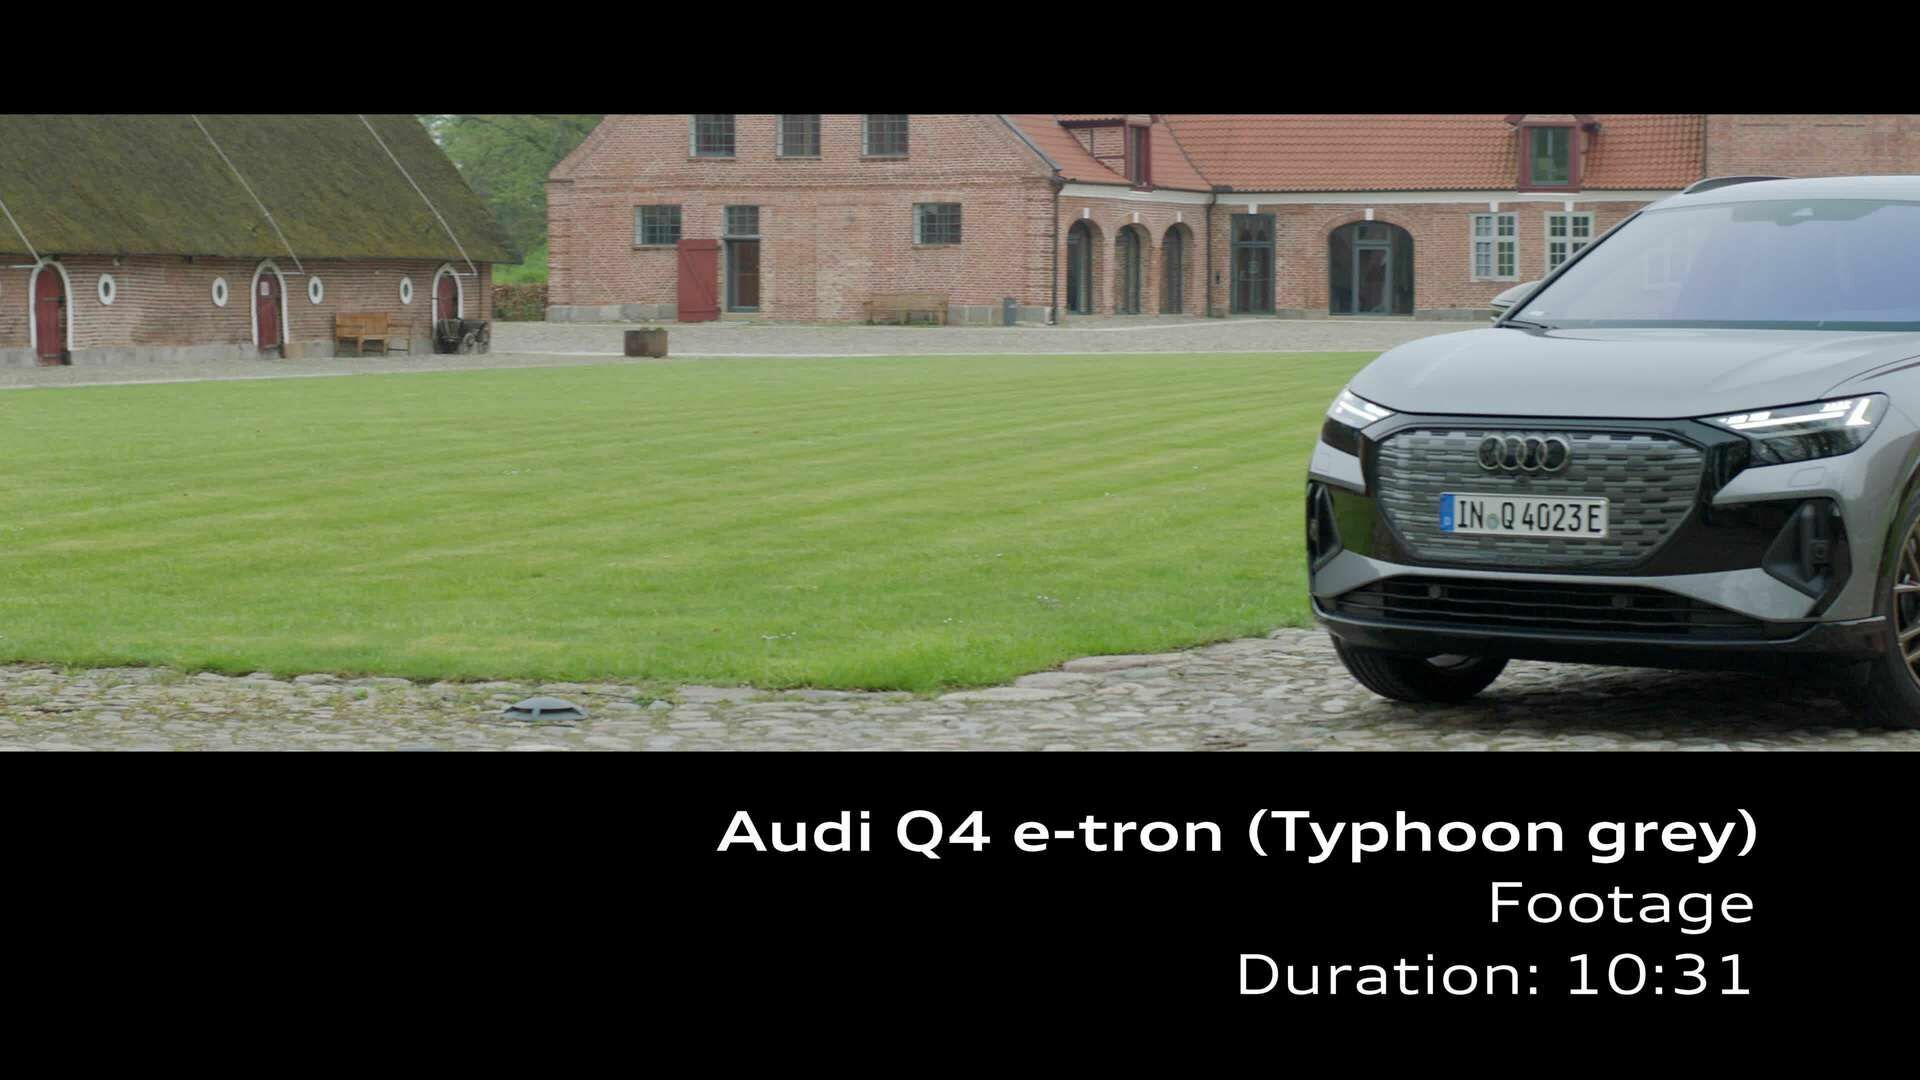 Footage: Audi Q4 e-tron – Taifungrau